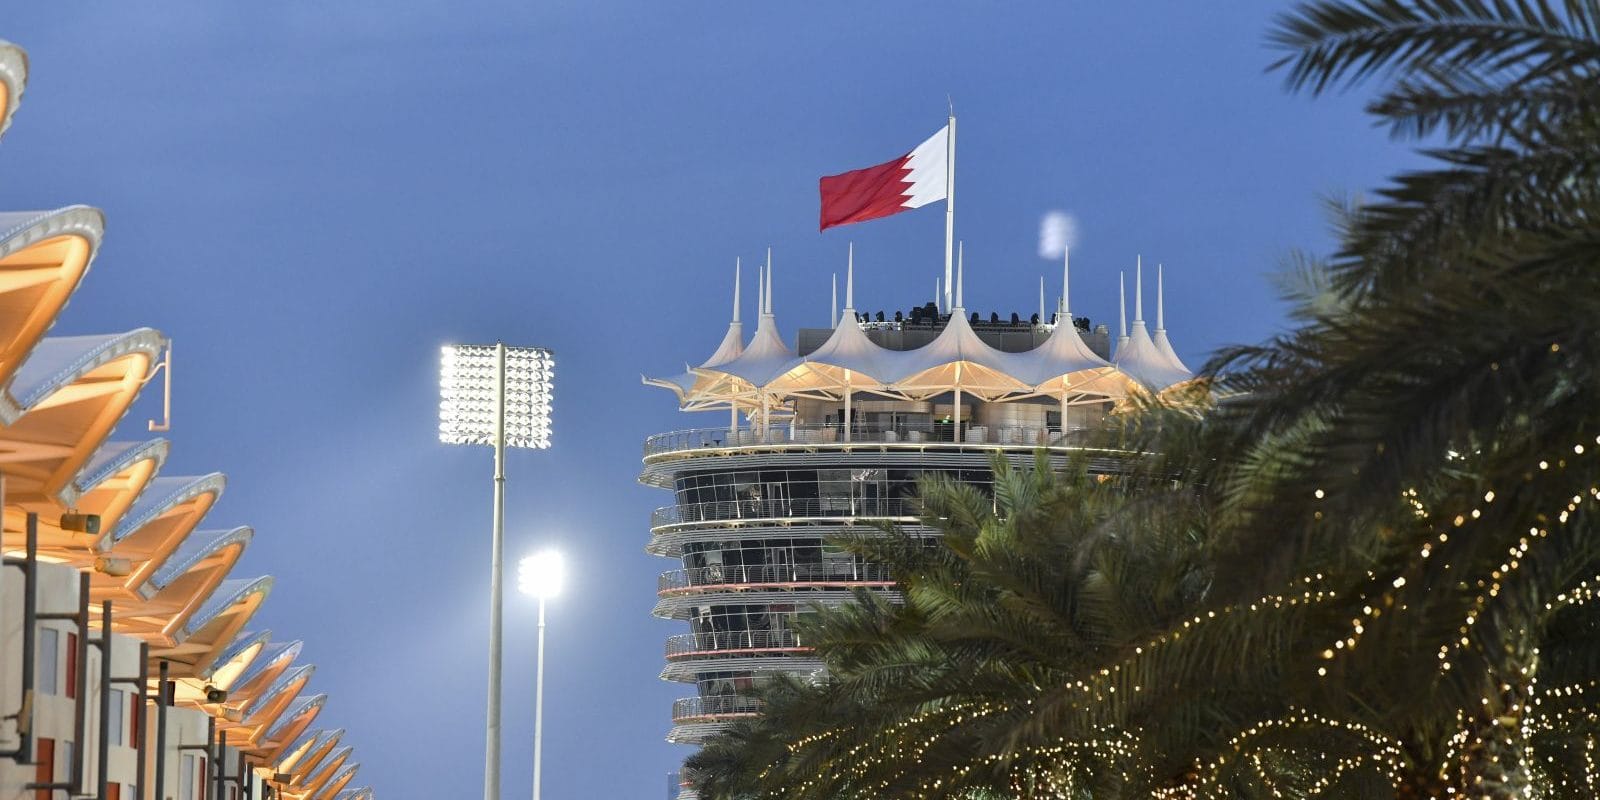 Přehled předsezonních testů formule 1 v Bahrajnu